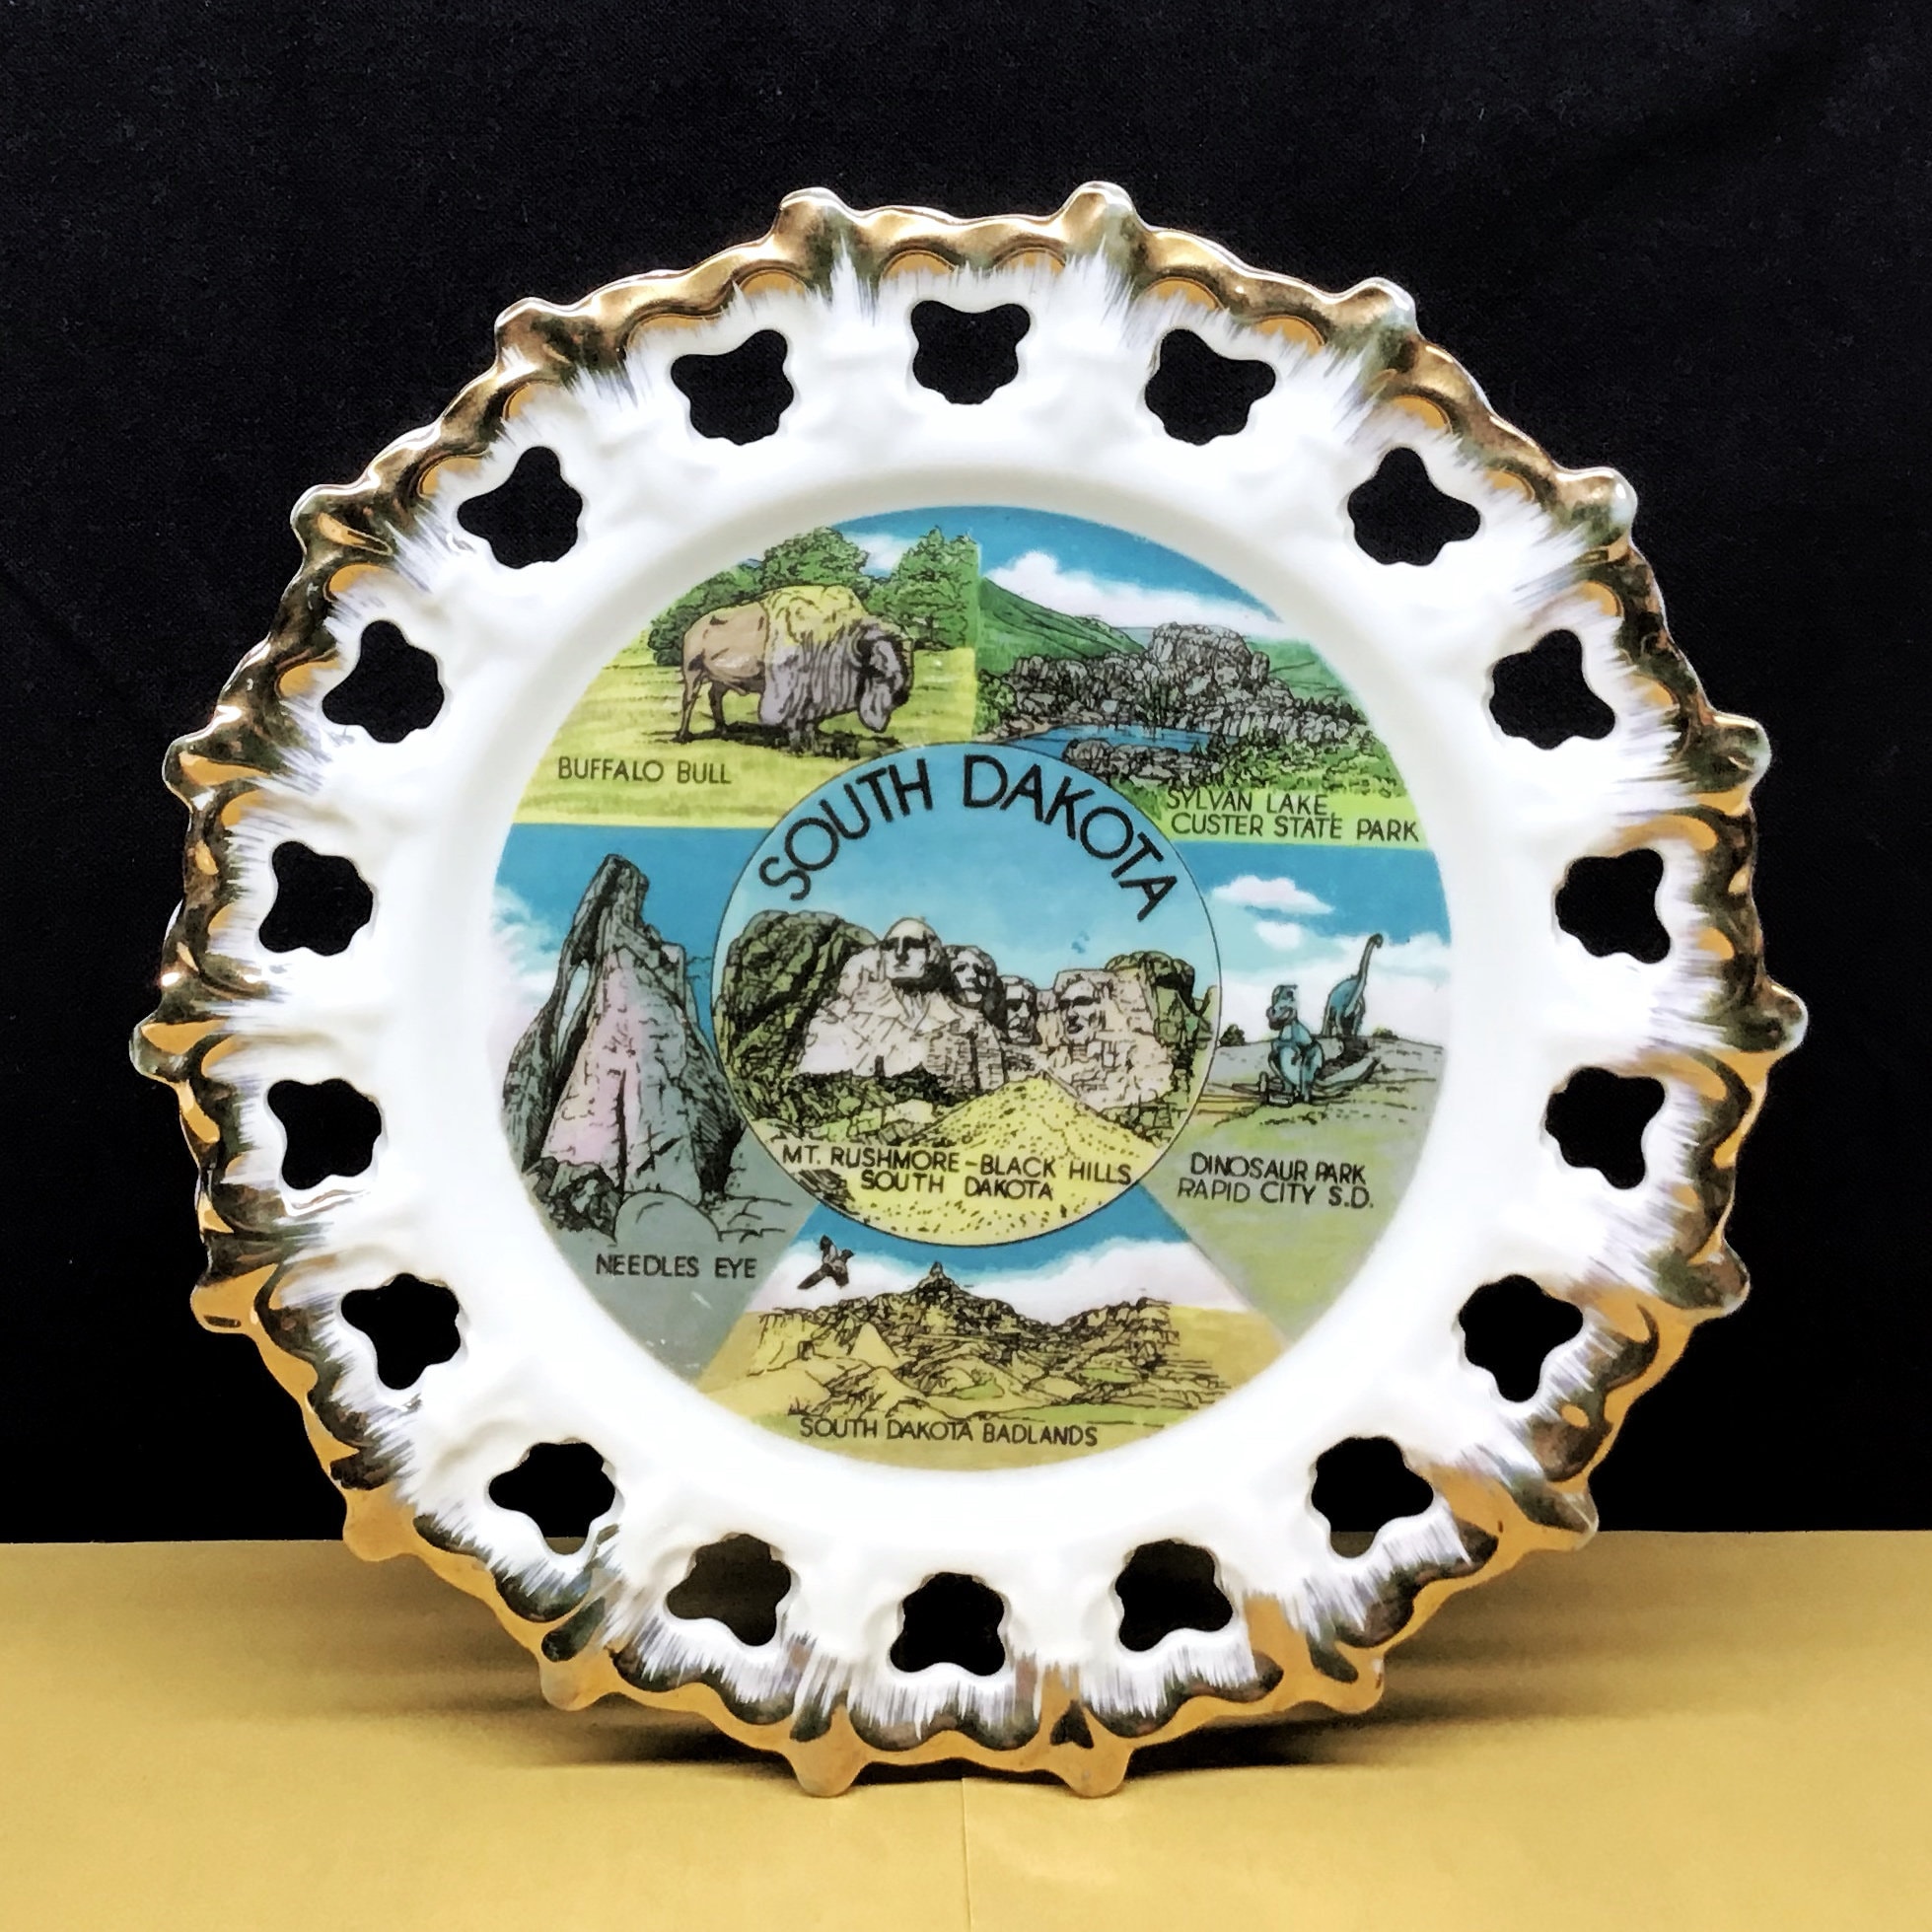 Vintage South Dakota State Souvenir Plate Mt image pic